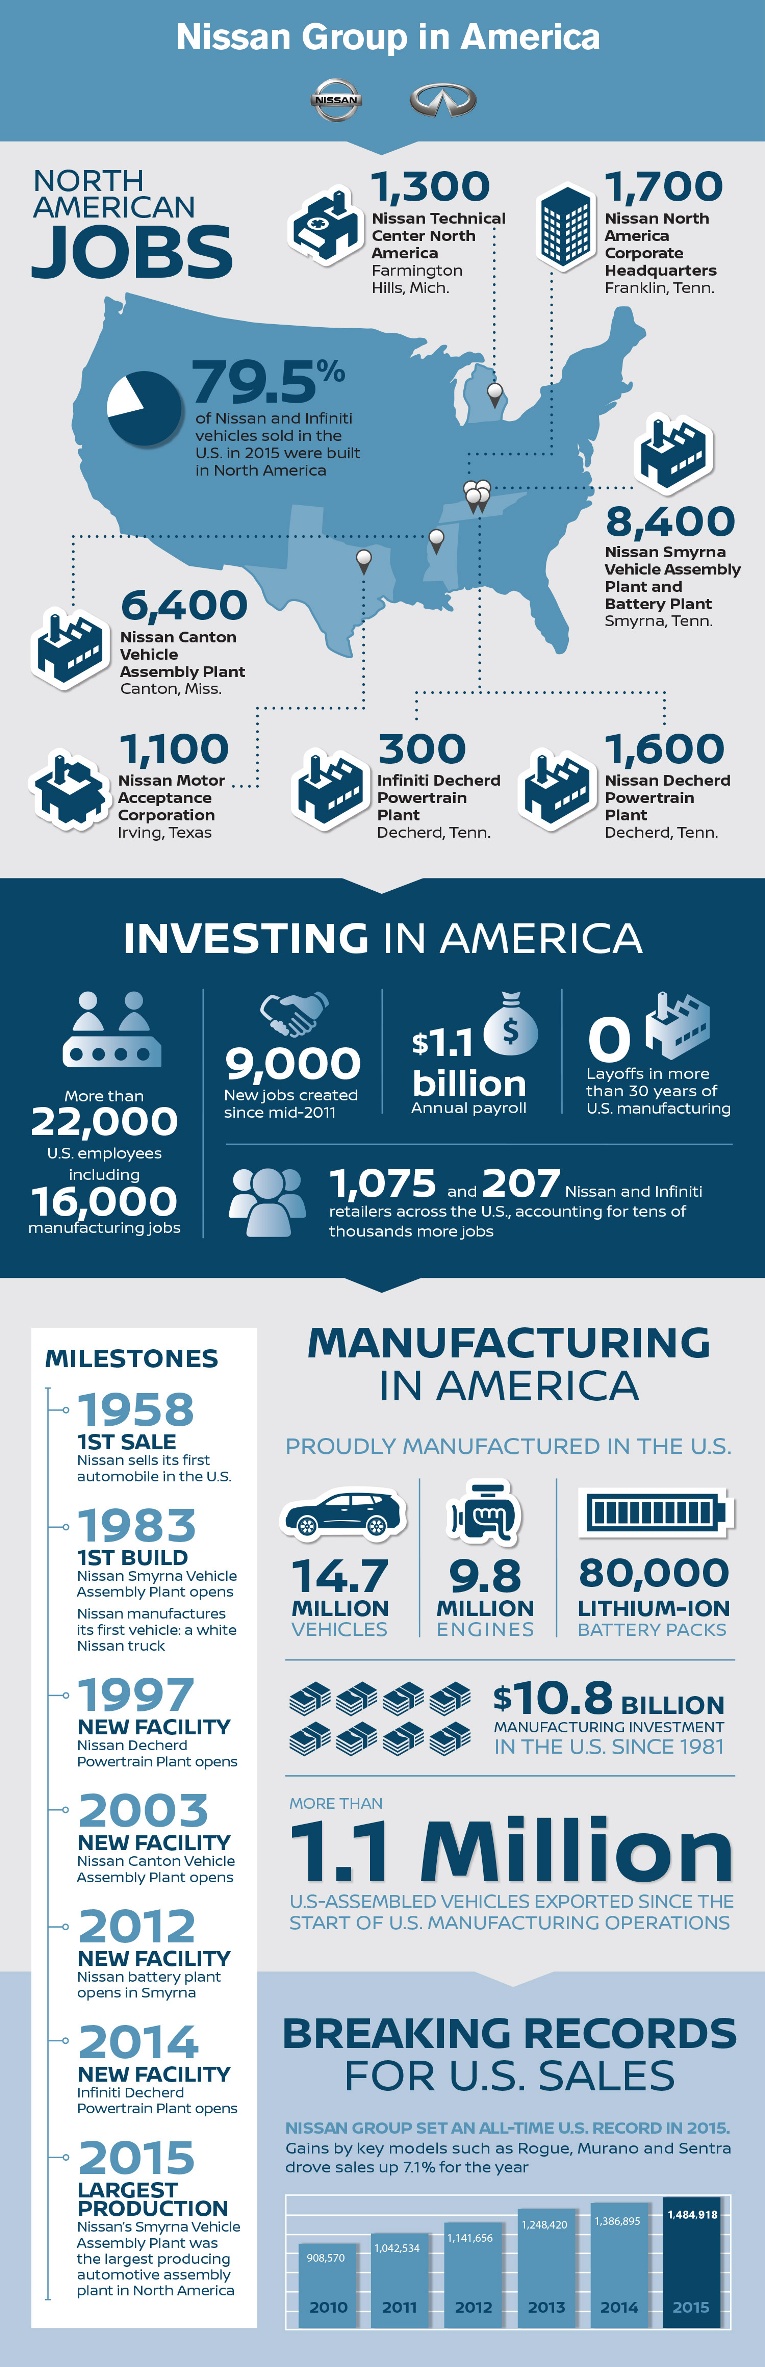 Nissan north america - u.s. manufacturing #1